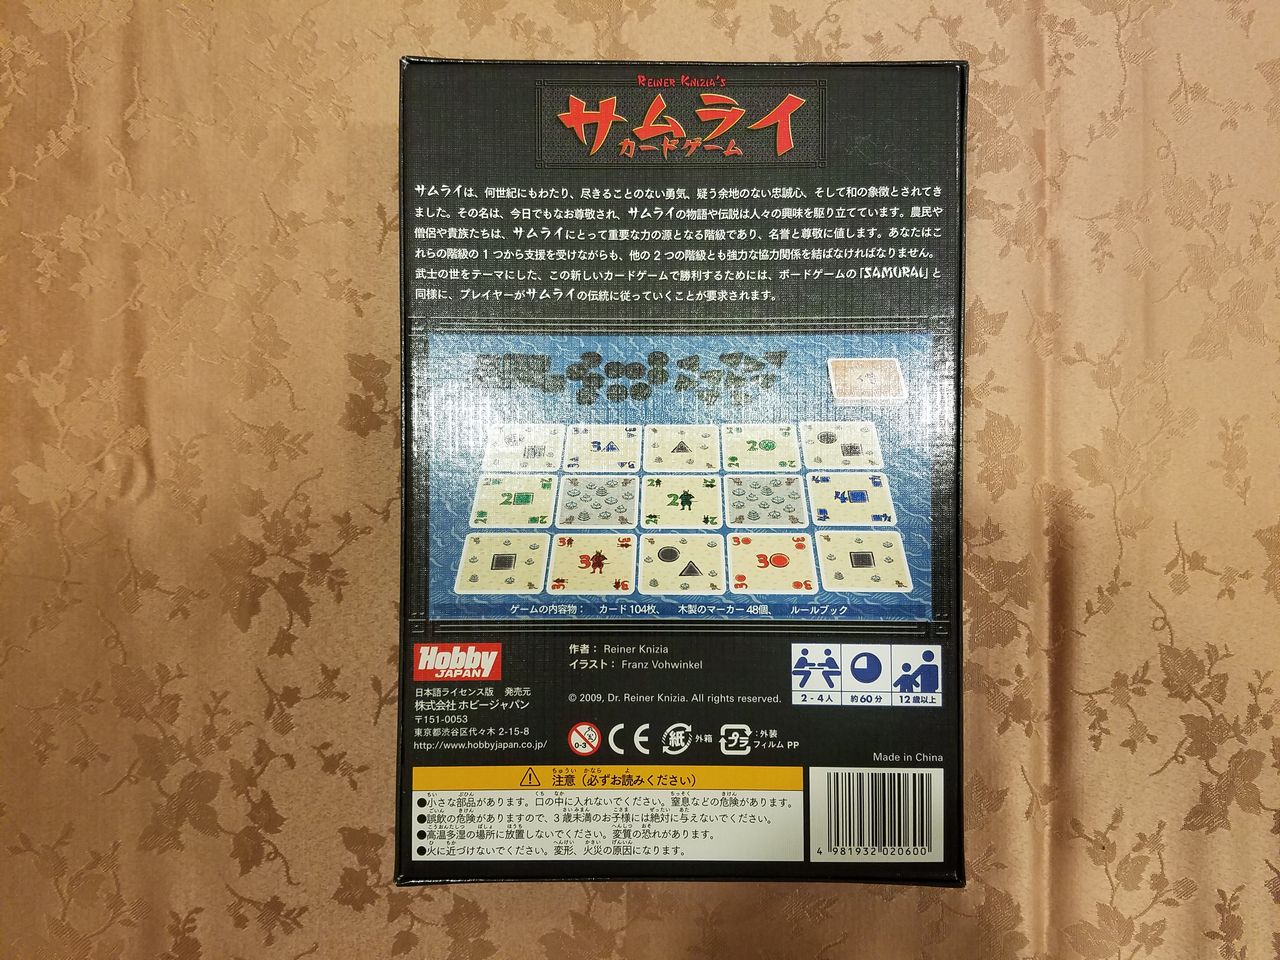 ボードゲーム レビュー 評価 サムライ ザ カードゲーム Samurai The Card Game あそびつながるラボ おすすめのボードゲーム紹介ブログ